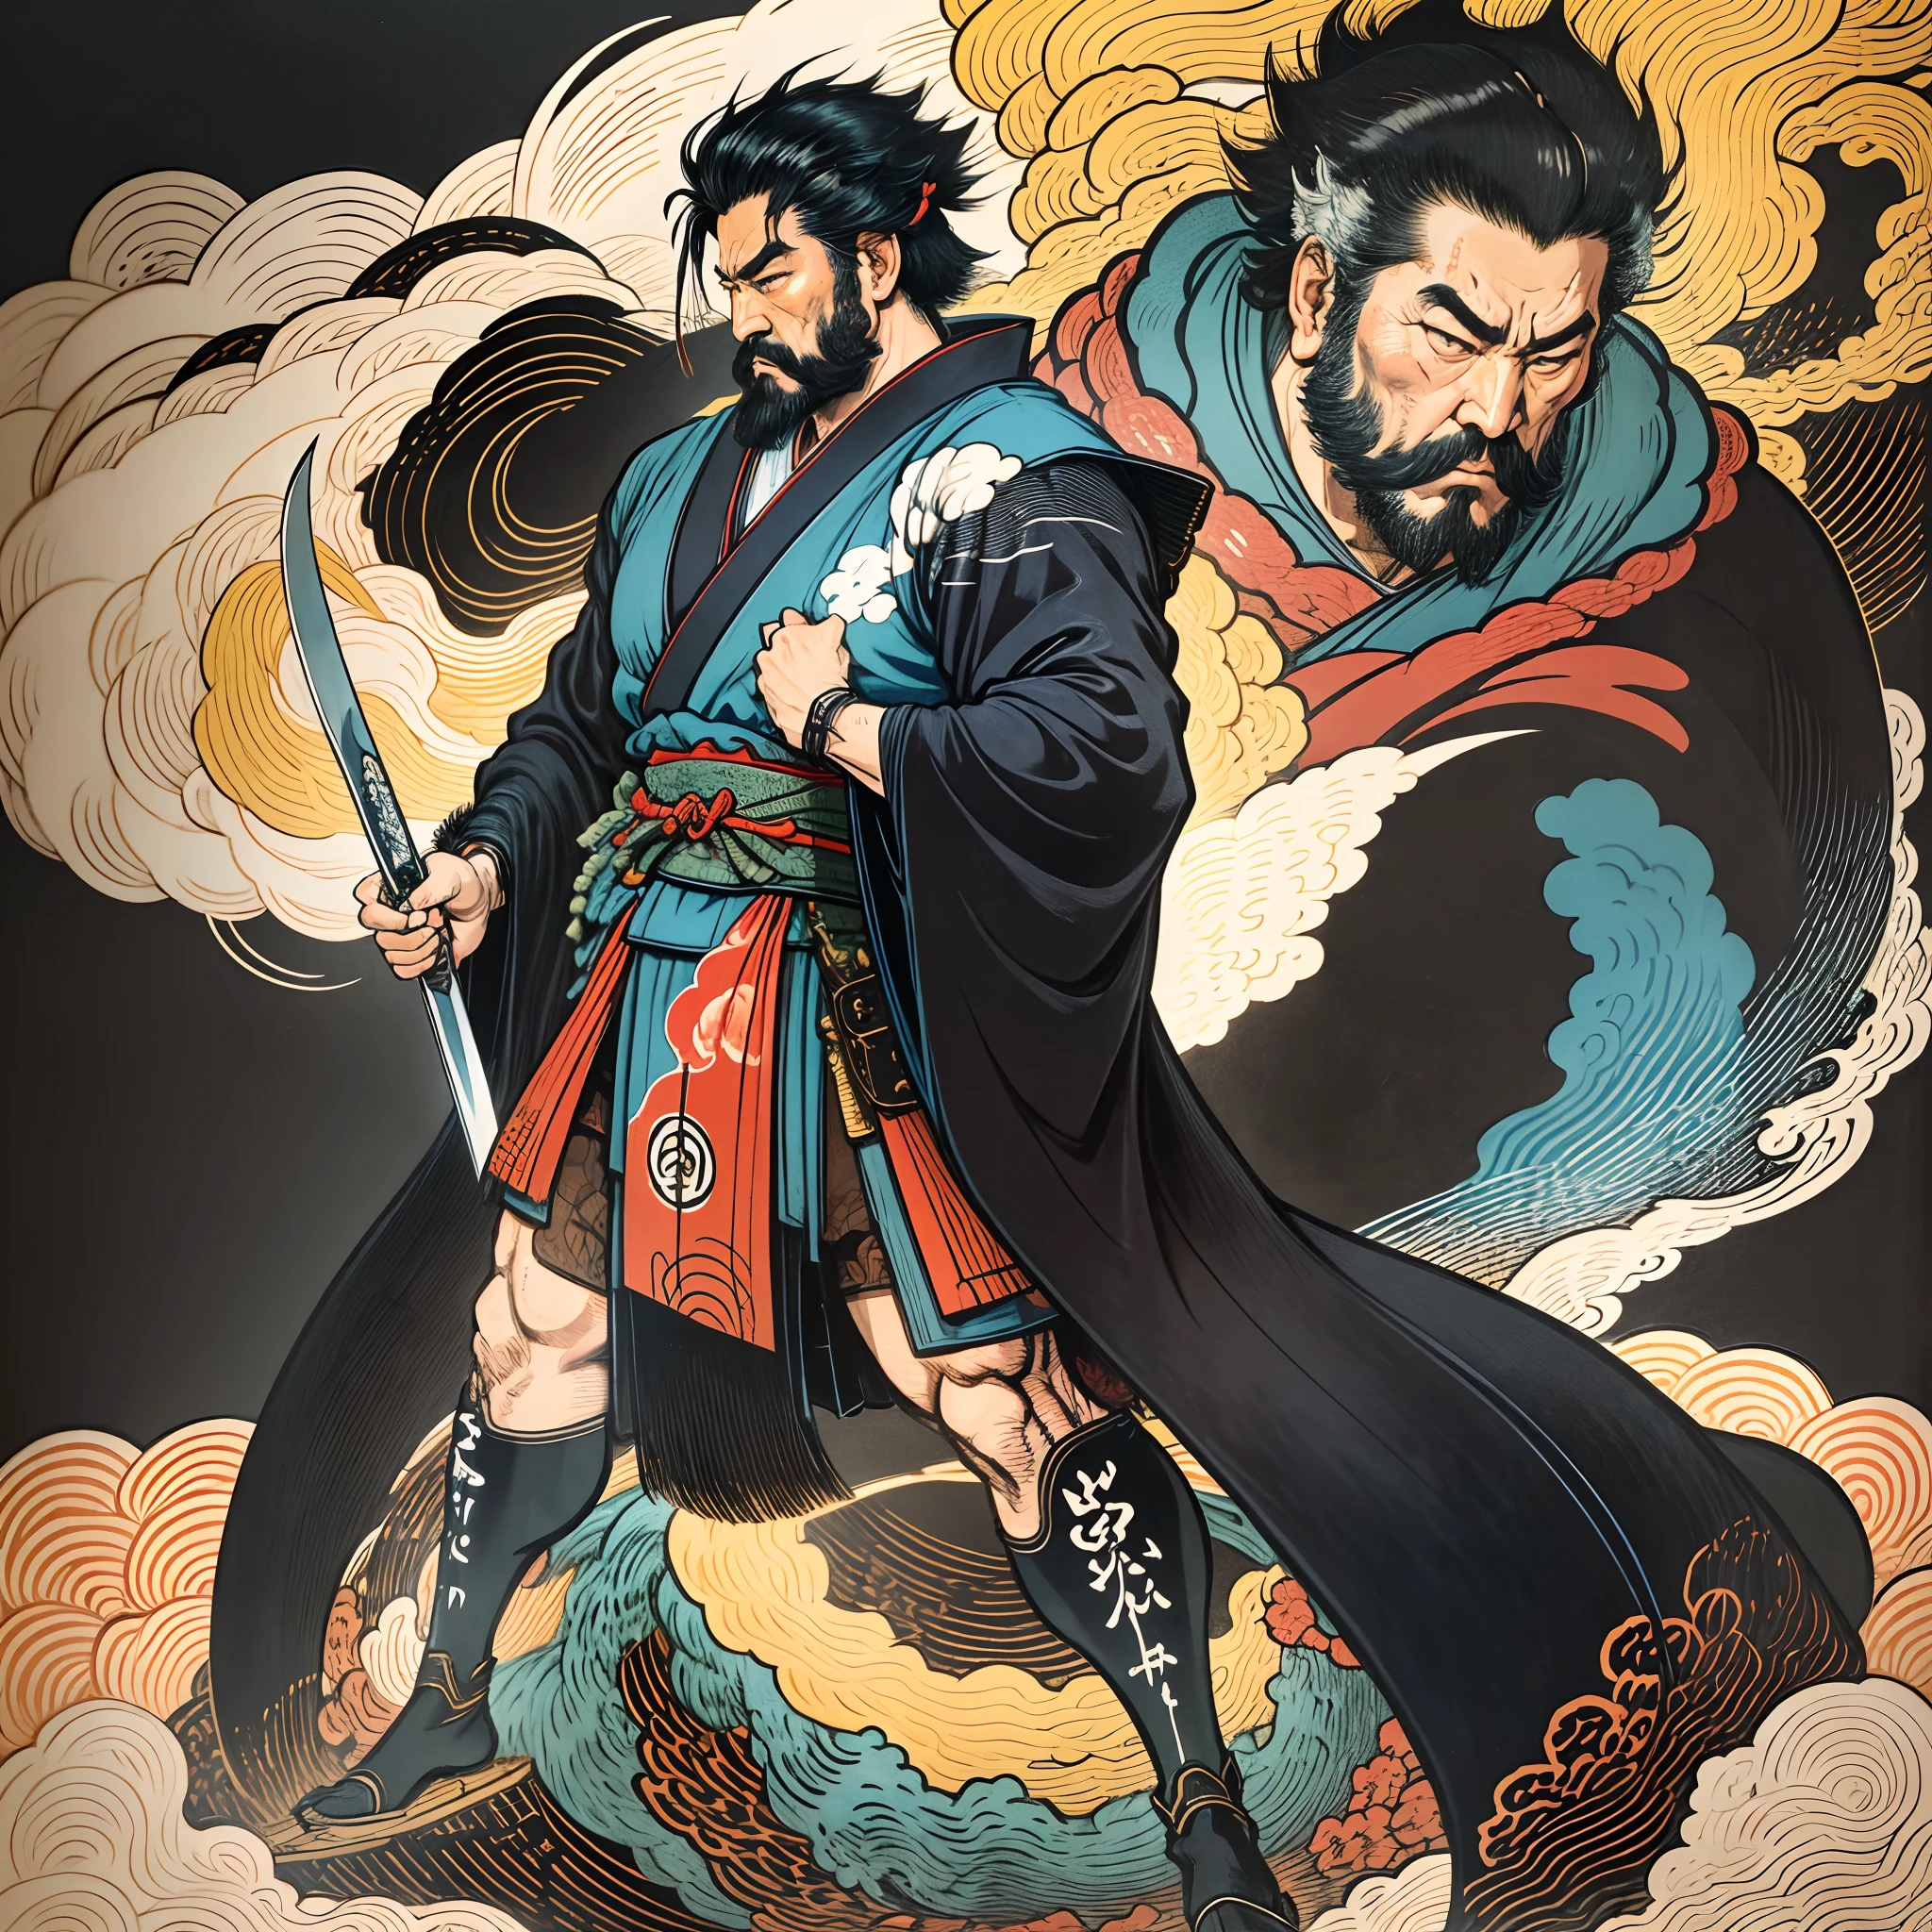 Il s&#39;agit d&#39;une peinture corporelle complète aux couleurs naturelles avec des dessins au trait de style Katsushika Hokusai.. L&#39;épéiste Miyamoto Musashi a un grand corps comme un homme fort. Samouraï du Japon. Il a une expression de détermination digne mais virile, Les cheveux cours et noirs, et un court, barbe taillée. Le haut de son corps est recouvert d&#39;un kimono noir et son hakama arrive jusqu&#39;aux genoux.. Dans sa main droite, il tient une épée japonaise. Dans la plus haute qualité, dans les éclairs et les flammes tourbillonnantes de style ukiyo-e haute résolution du chef-d&#39;œuvre. Miyamoto Musashi se tient debout, le visage et le corps tournés vers l&#39;avant., il a le dos droit.